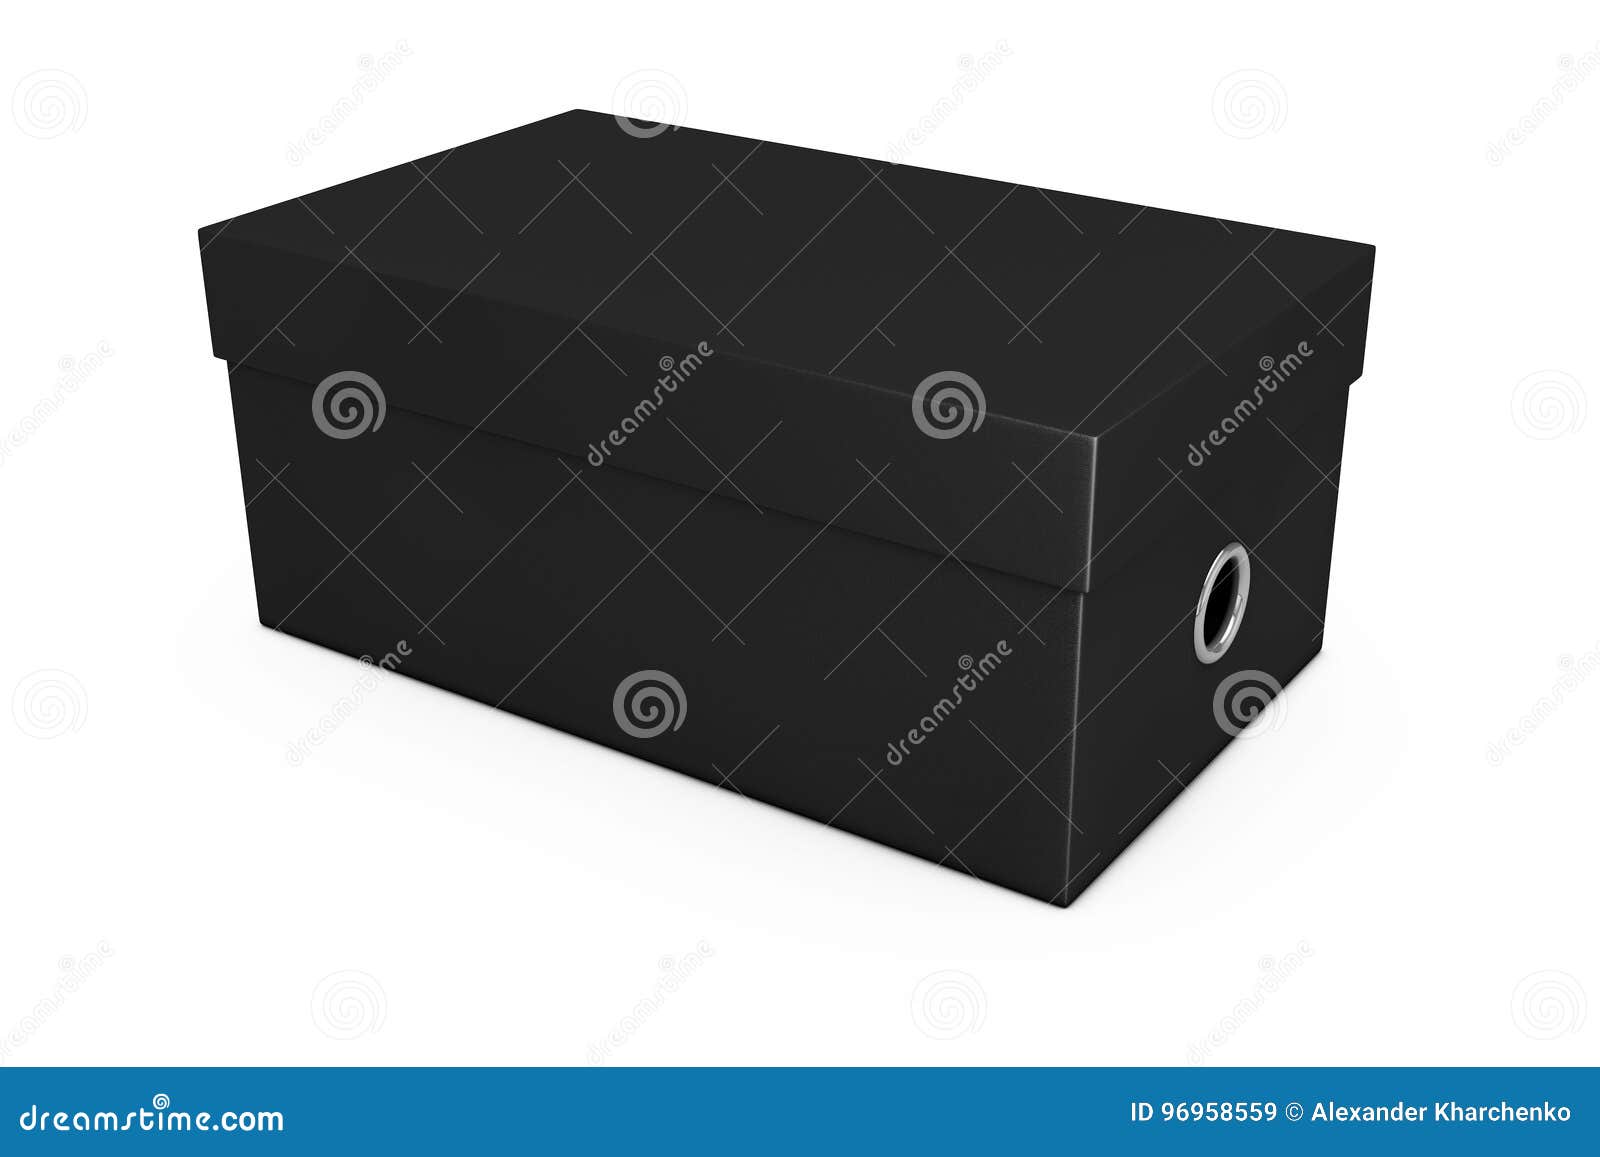 Download Black Blank Cardboard Shoe Box Mockup For Your Design. 3d ...